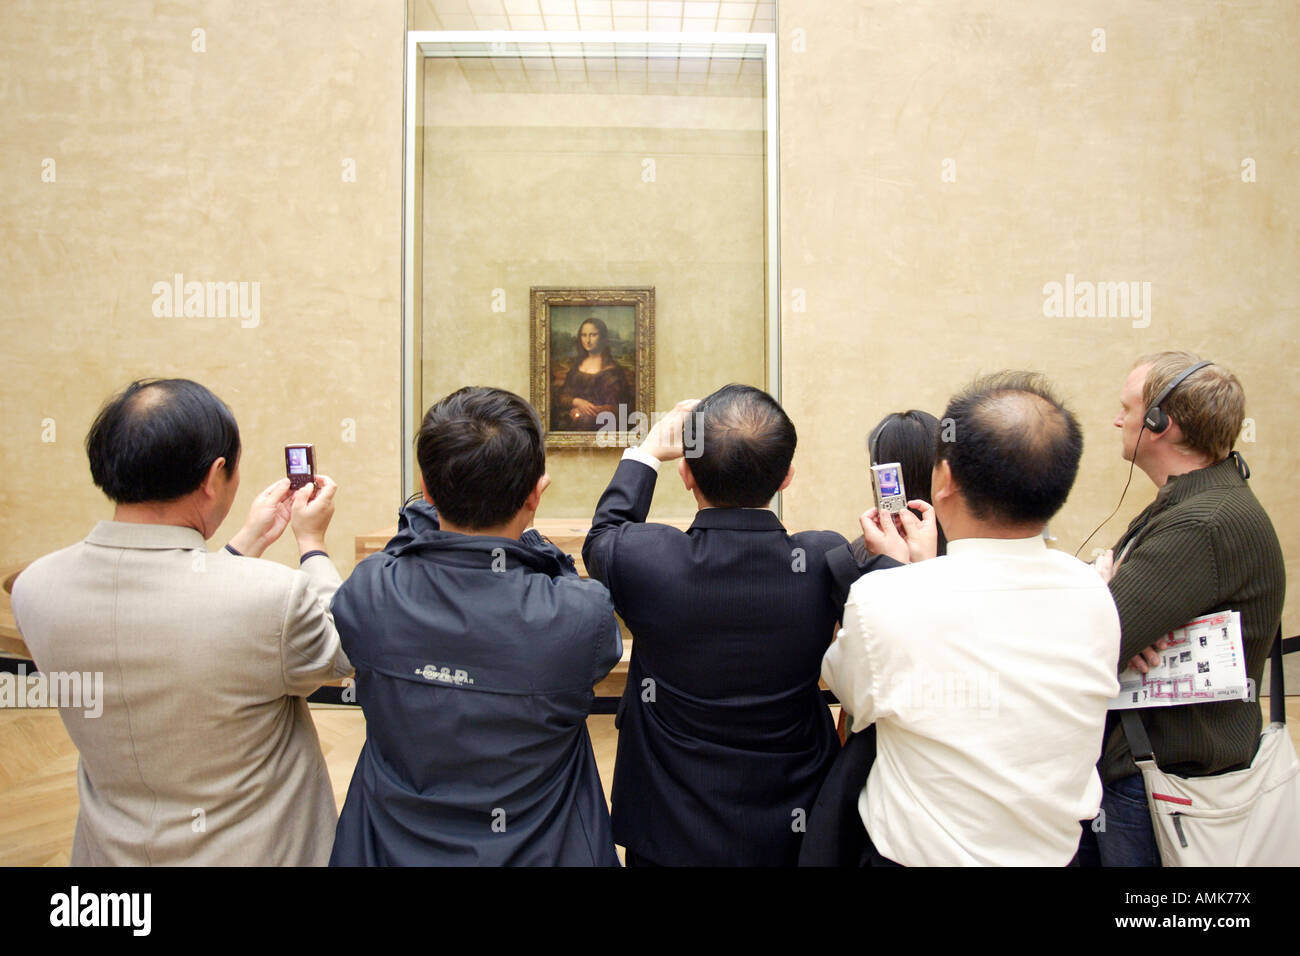 Les touristes prennent des photos de la Joconde au Musée du Louvre, Paris, France Banque D'Images